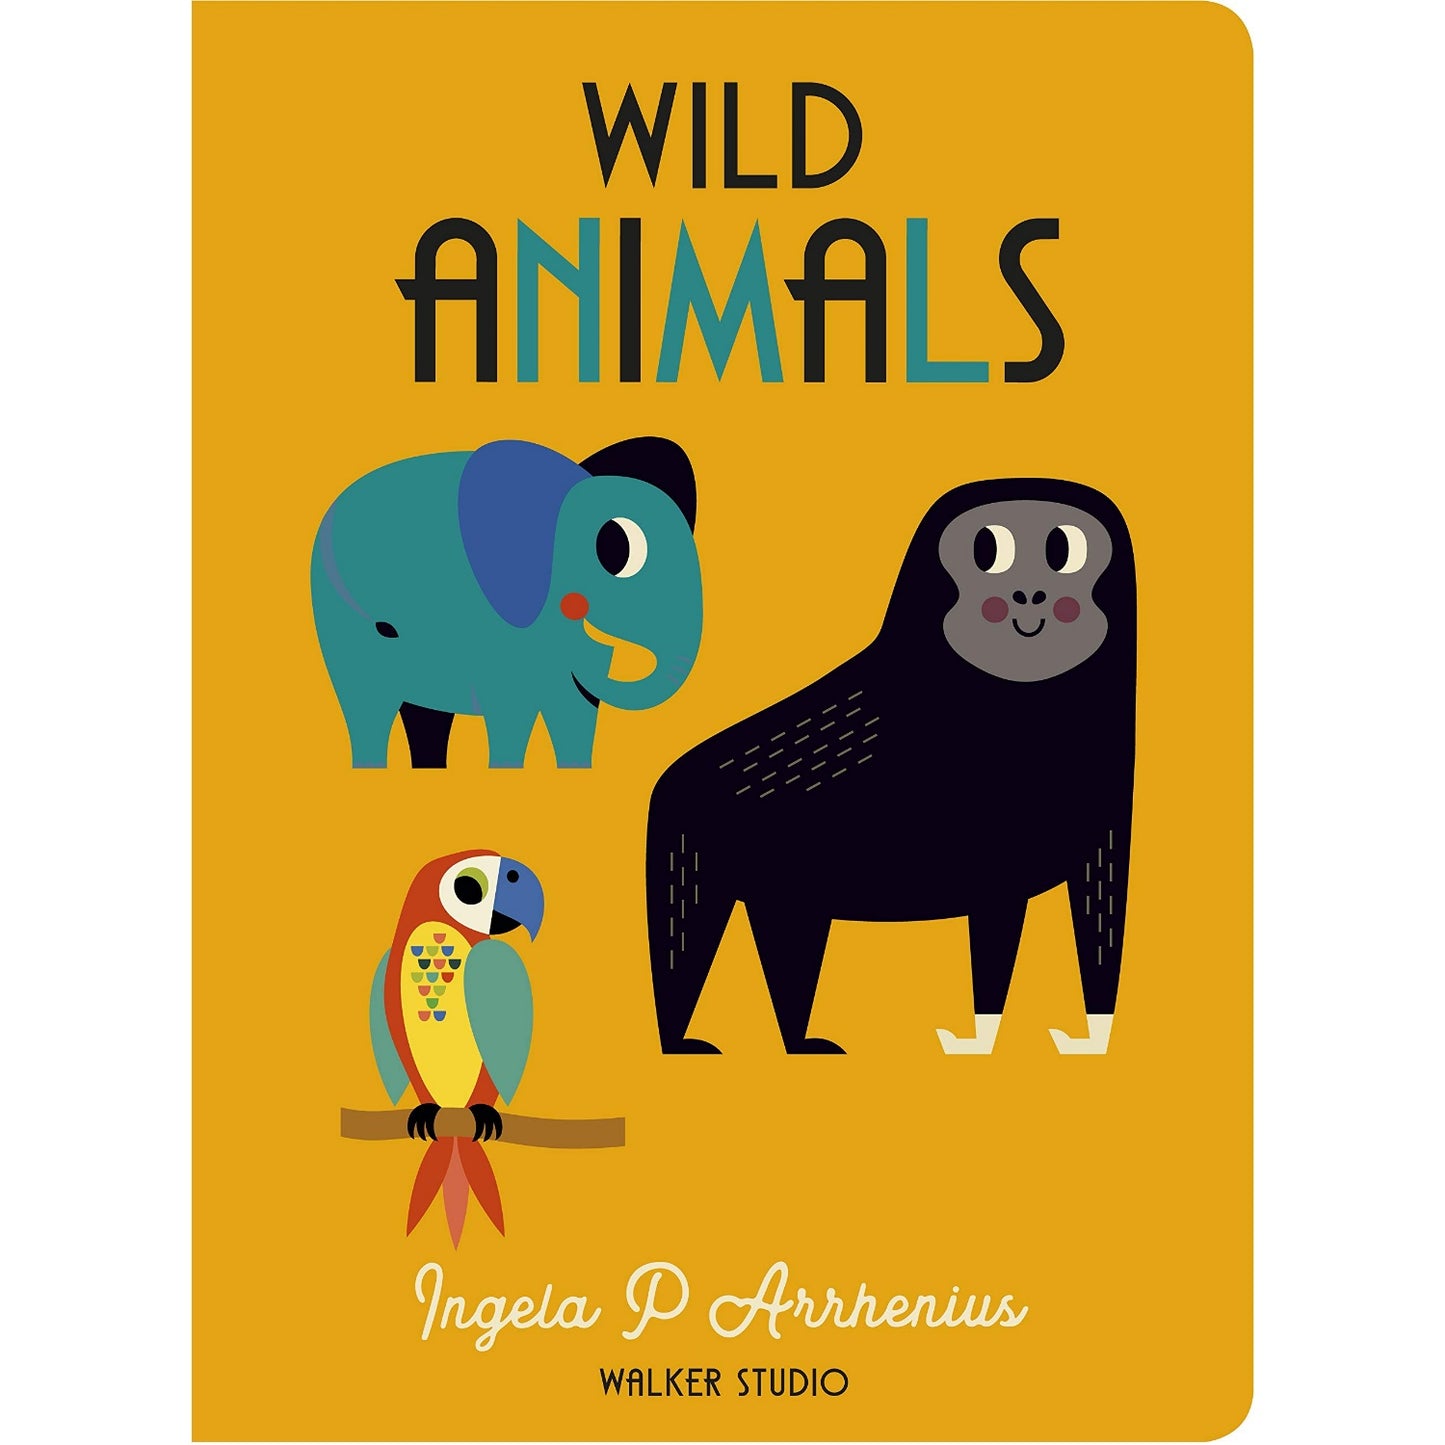 Wild Animals | Children's Board Book on Zoo Animals